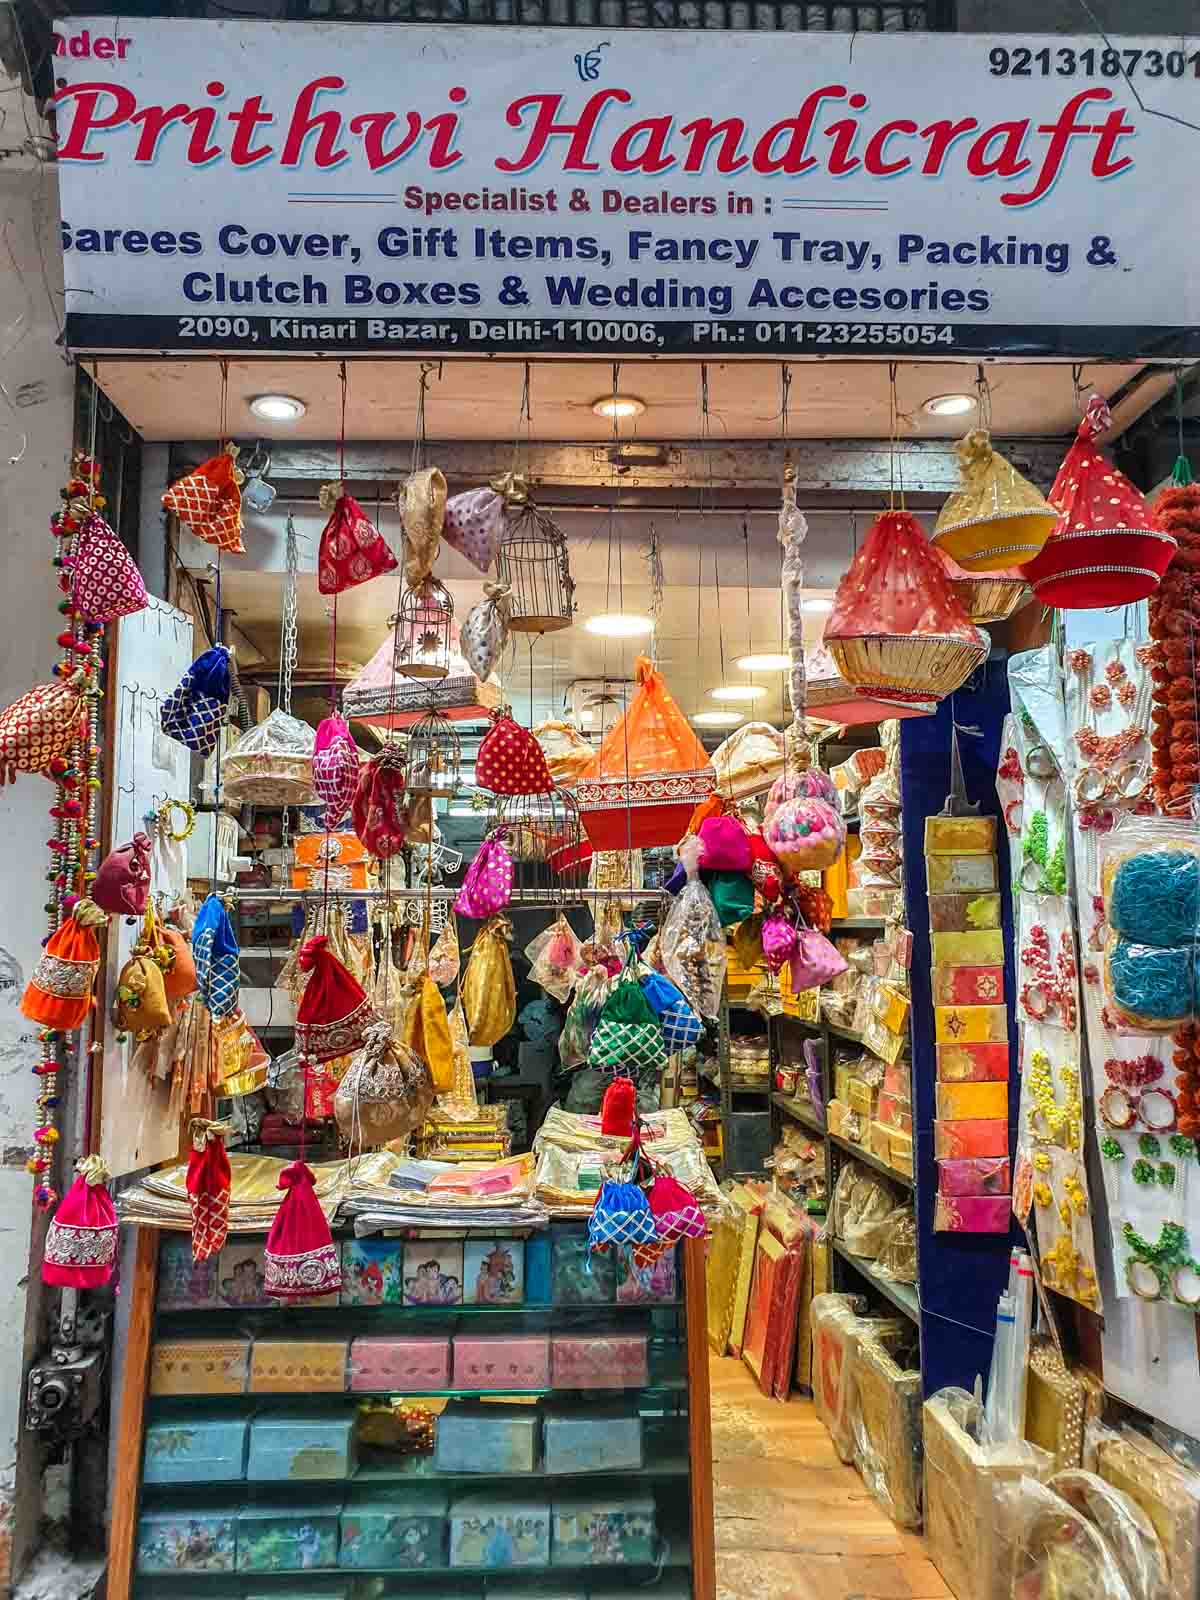 Wedding and handicraft market in Chandni Chowk Delhi